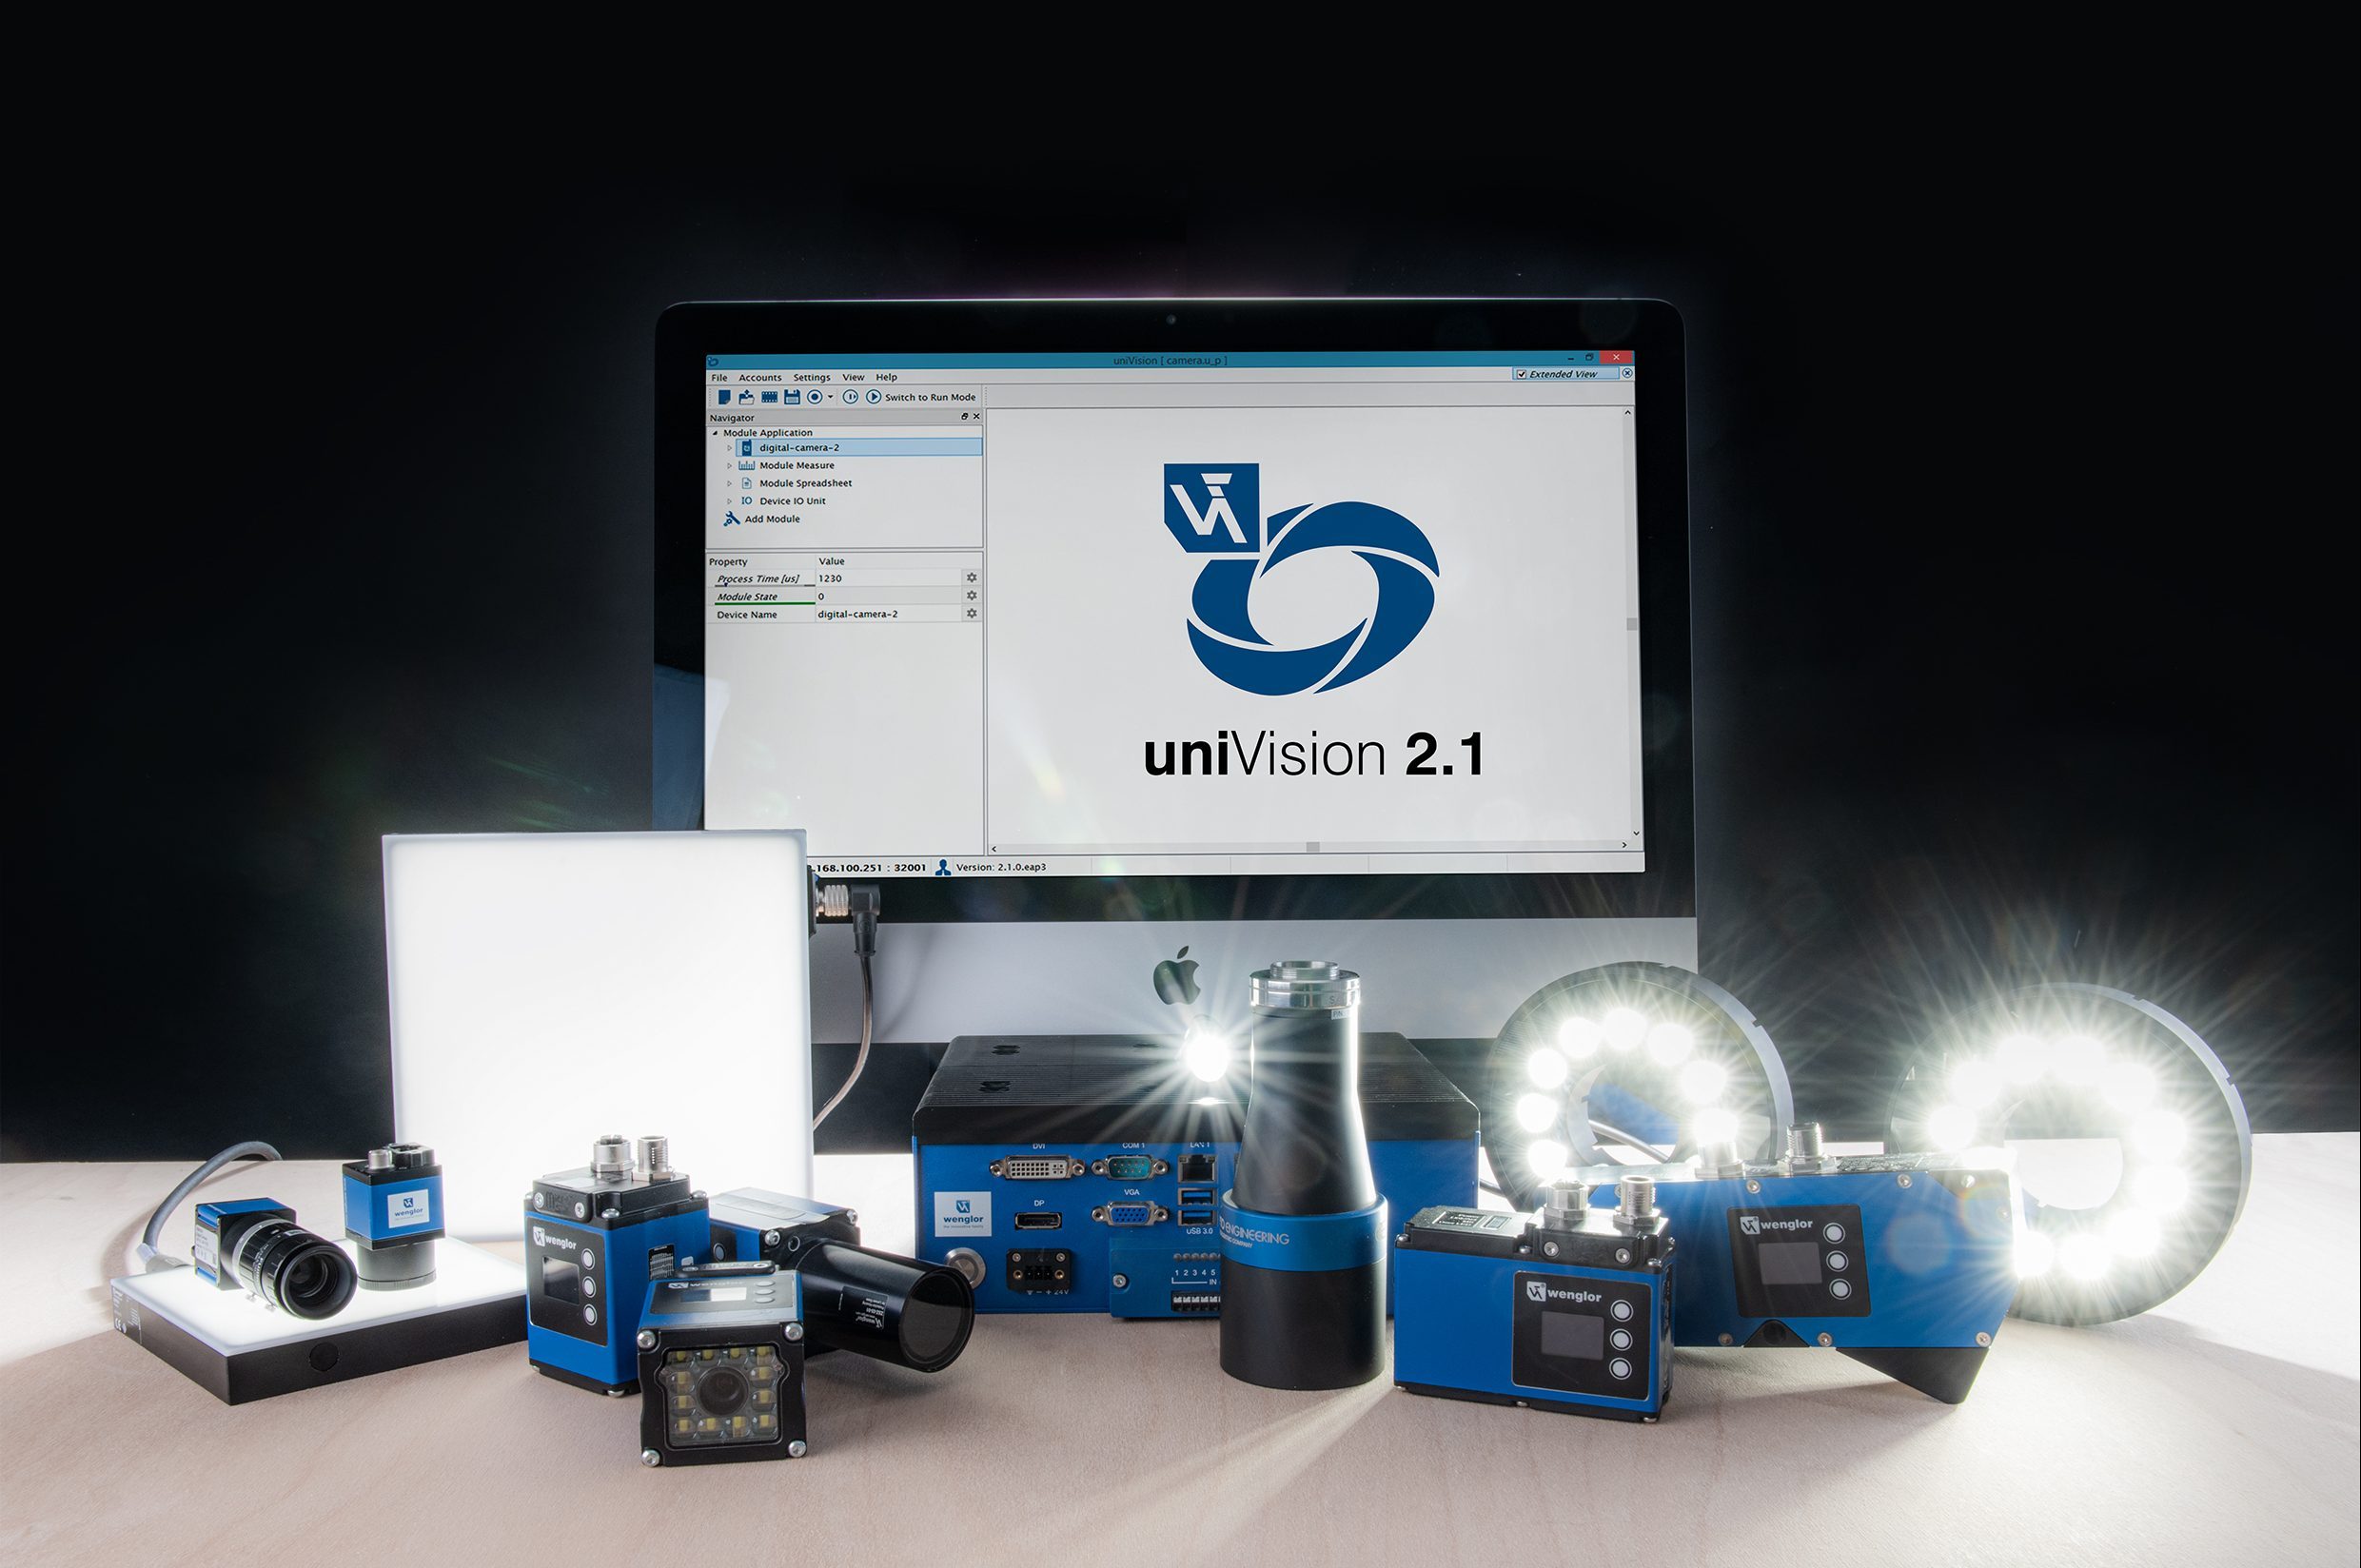 Bild 1 | Die Bildverarbeitungssoftware uniVision 2.1 lässt sich, ganz ohne Programmierkenntnisse, sowohl mit Smart Cameras als auch mit Visionsystemen und 2D-/3DProfilsensoren nutzen. (Bild: Wenglor sensoric GmbH)